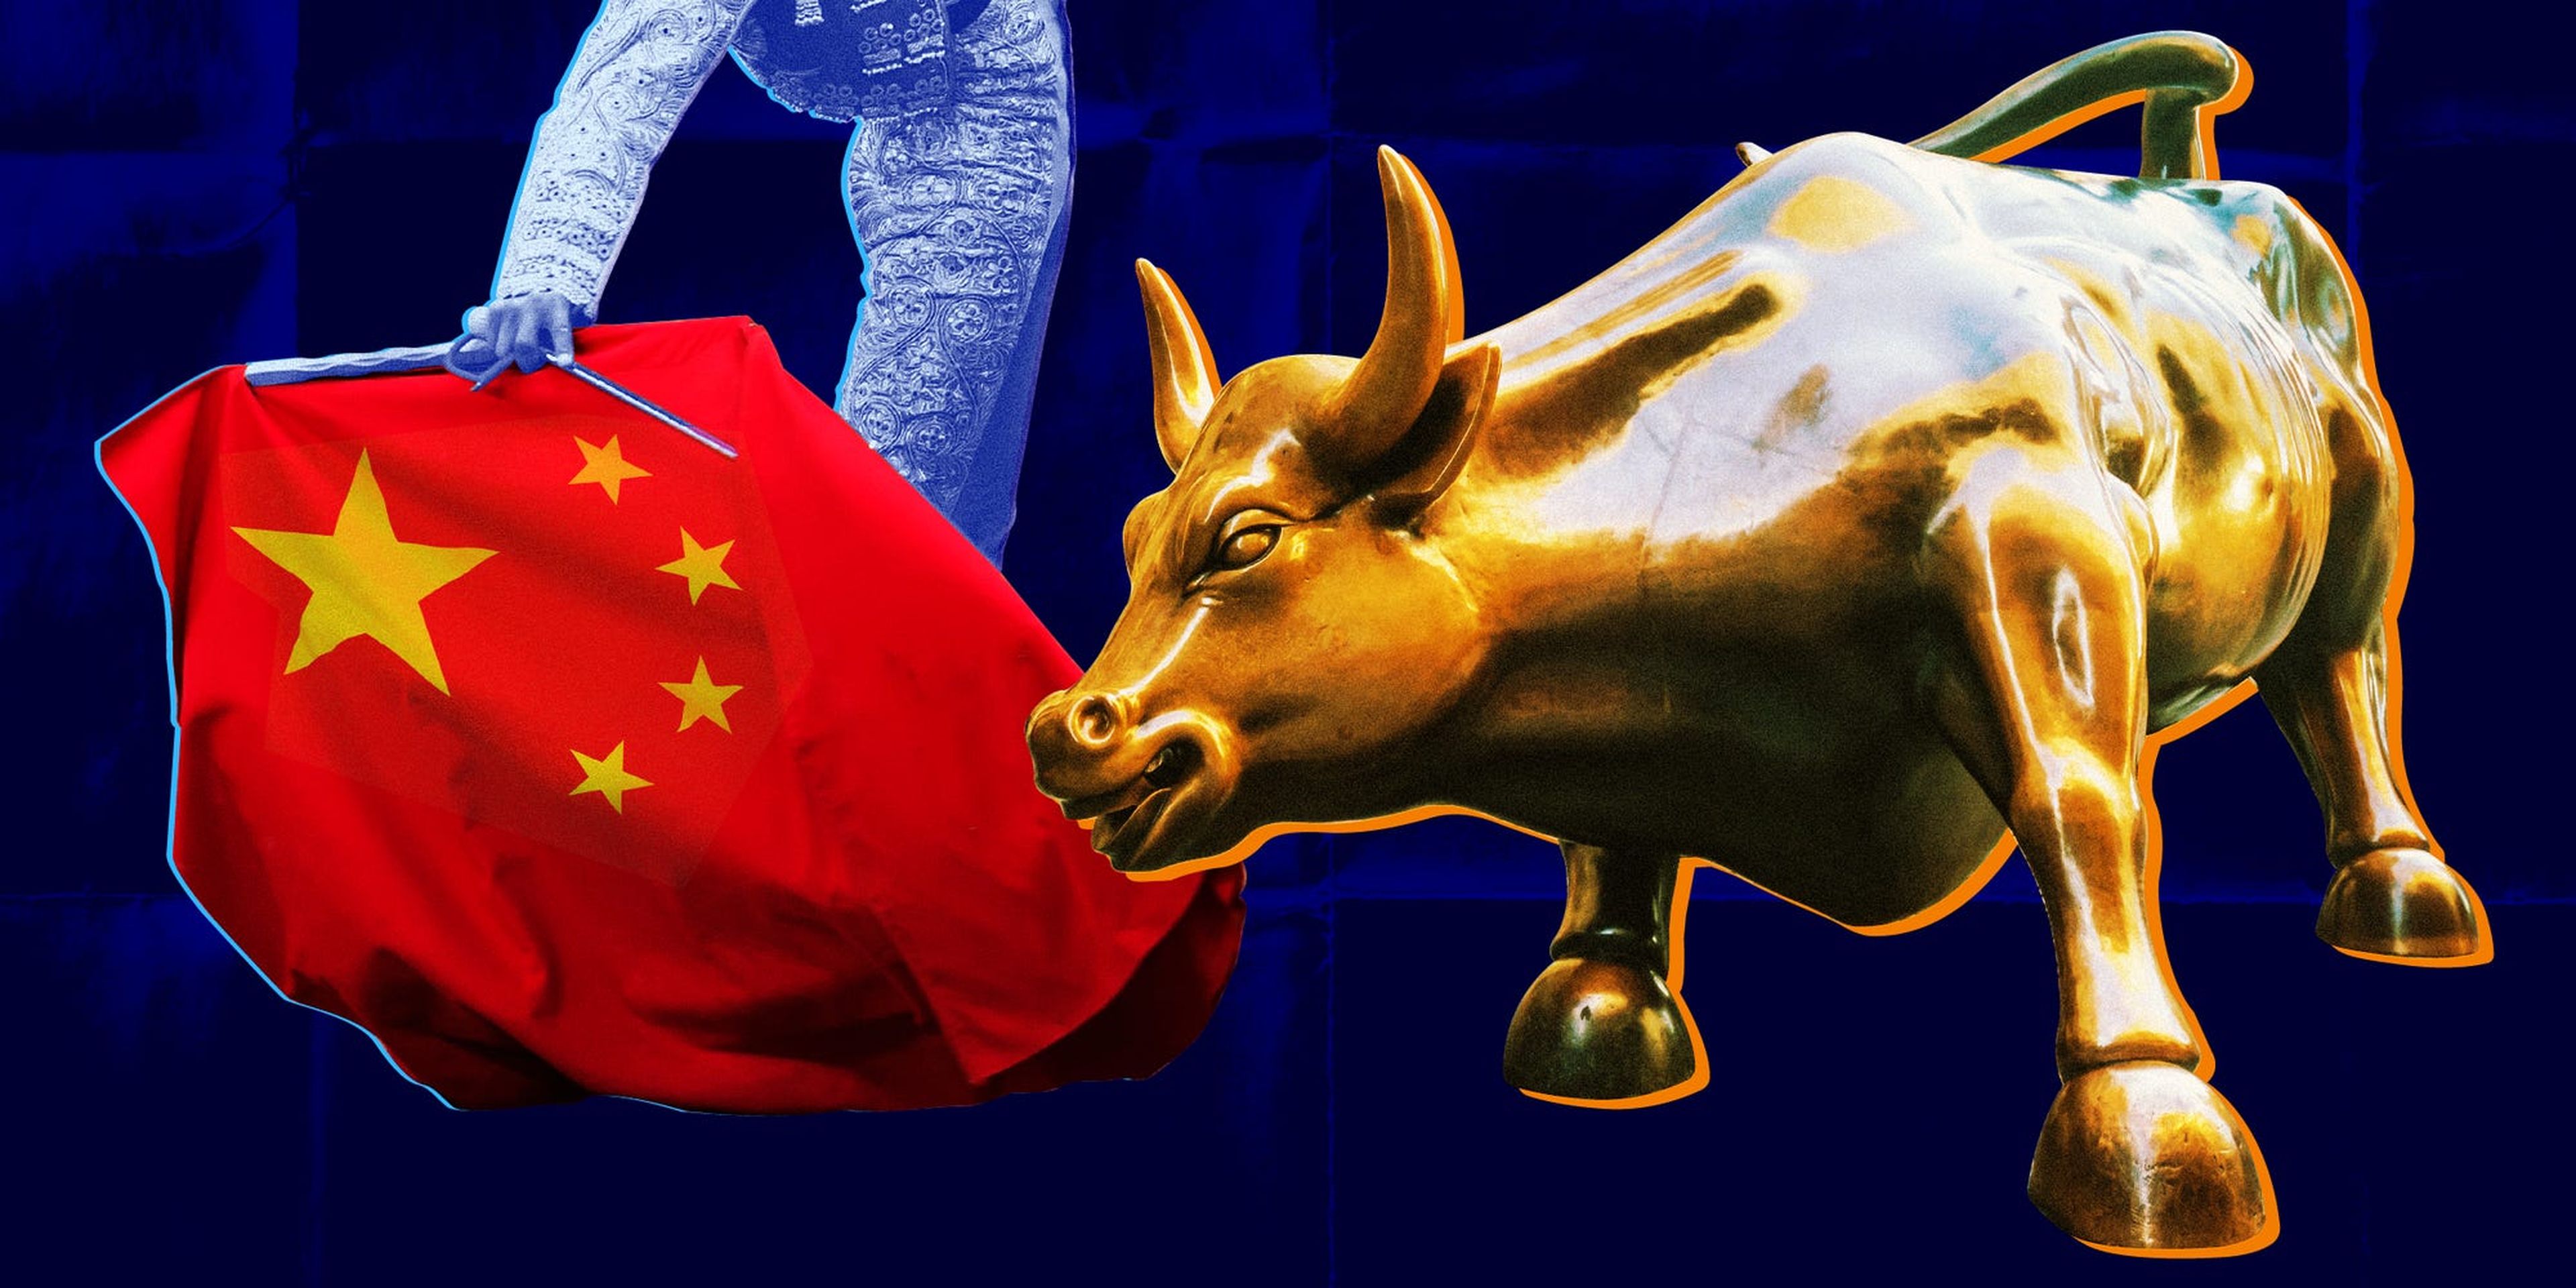 Wall Street ve que se puede ganar dinero en China y está dispuesto a ignorar las señales de alerta económicas y políticas que surjan en el camino.